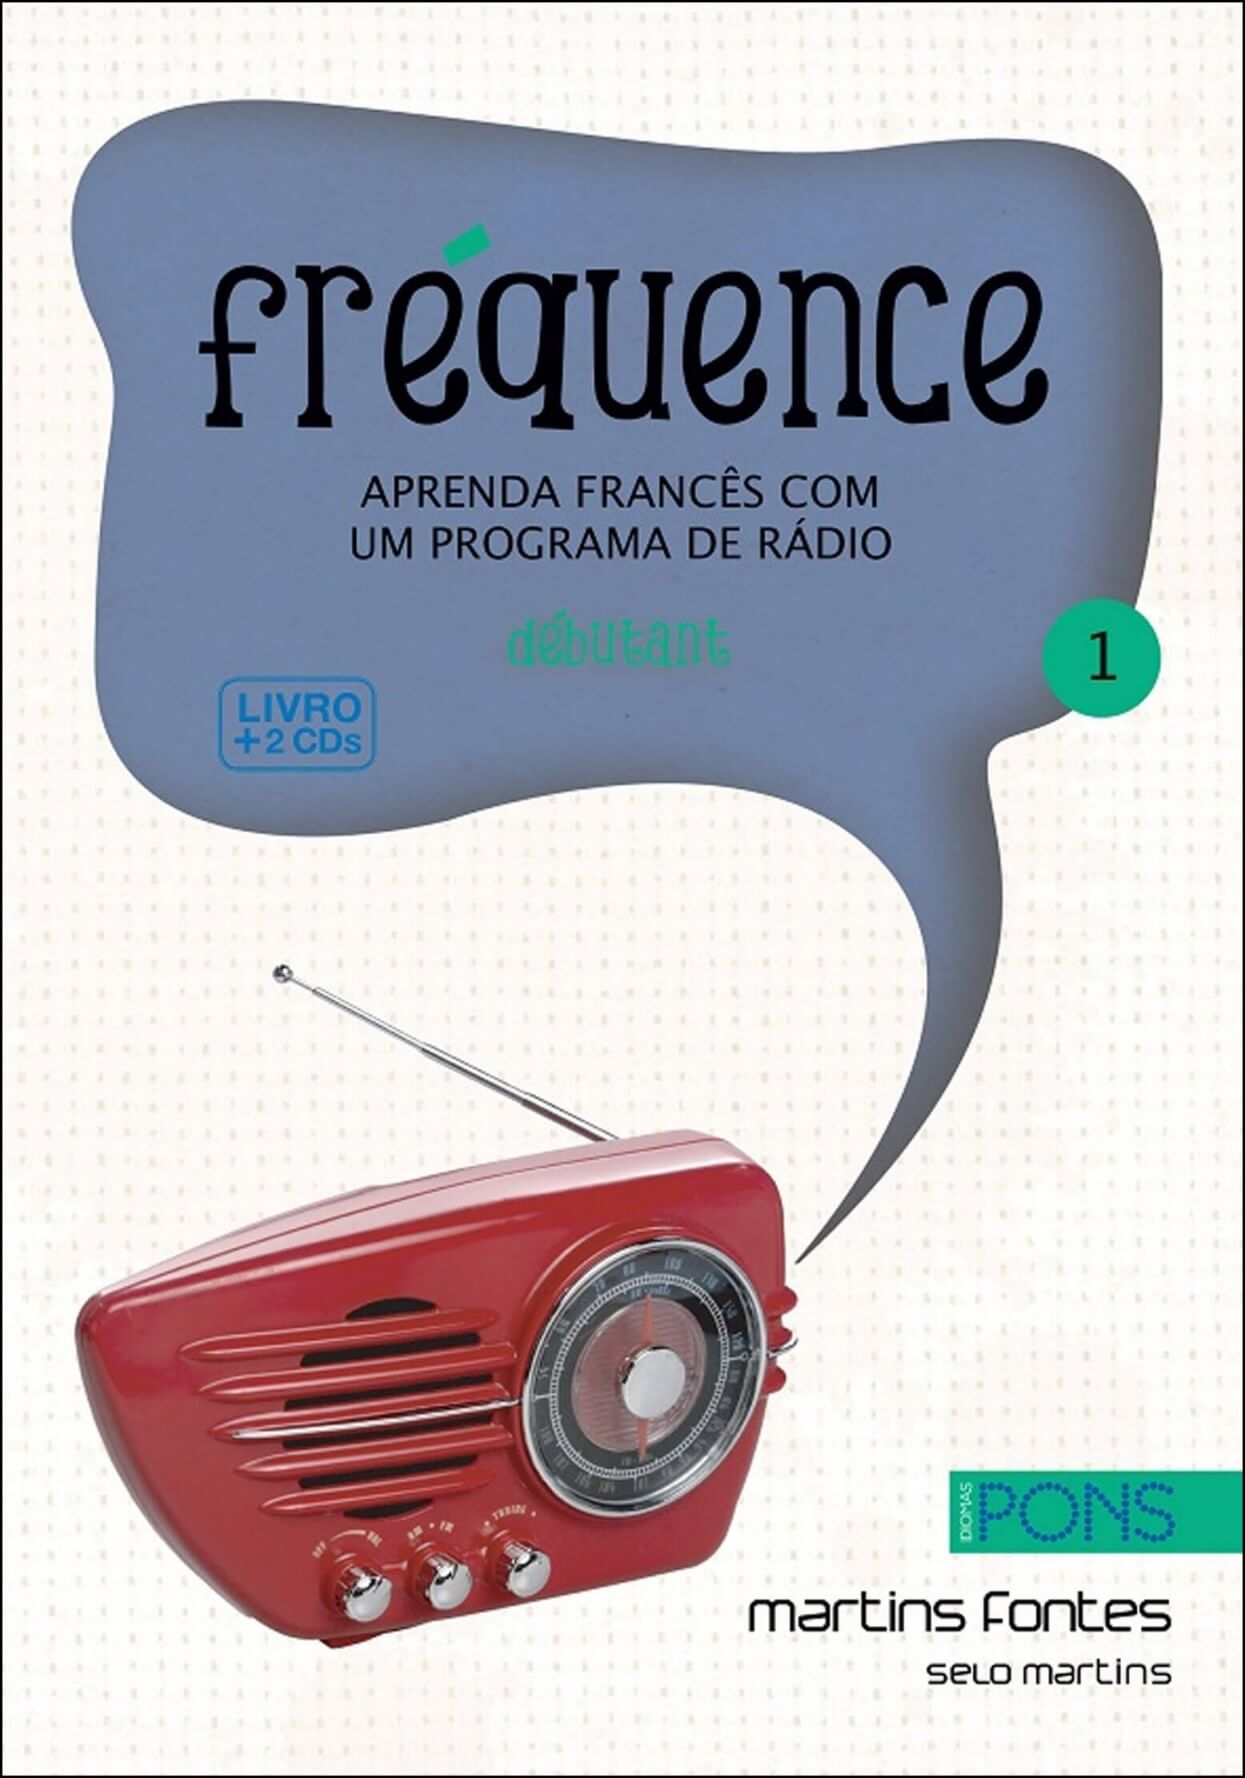 Fréquence 1 - Aprenda francês com um programa de rádio + 2 CDs  - Martins Fontes